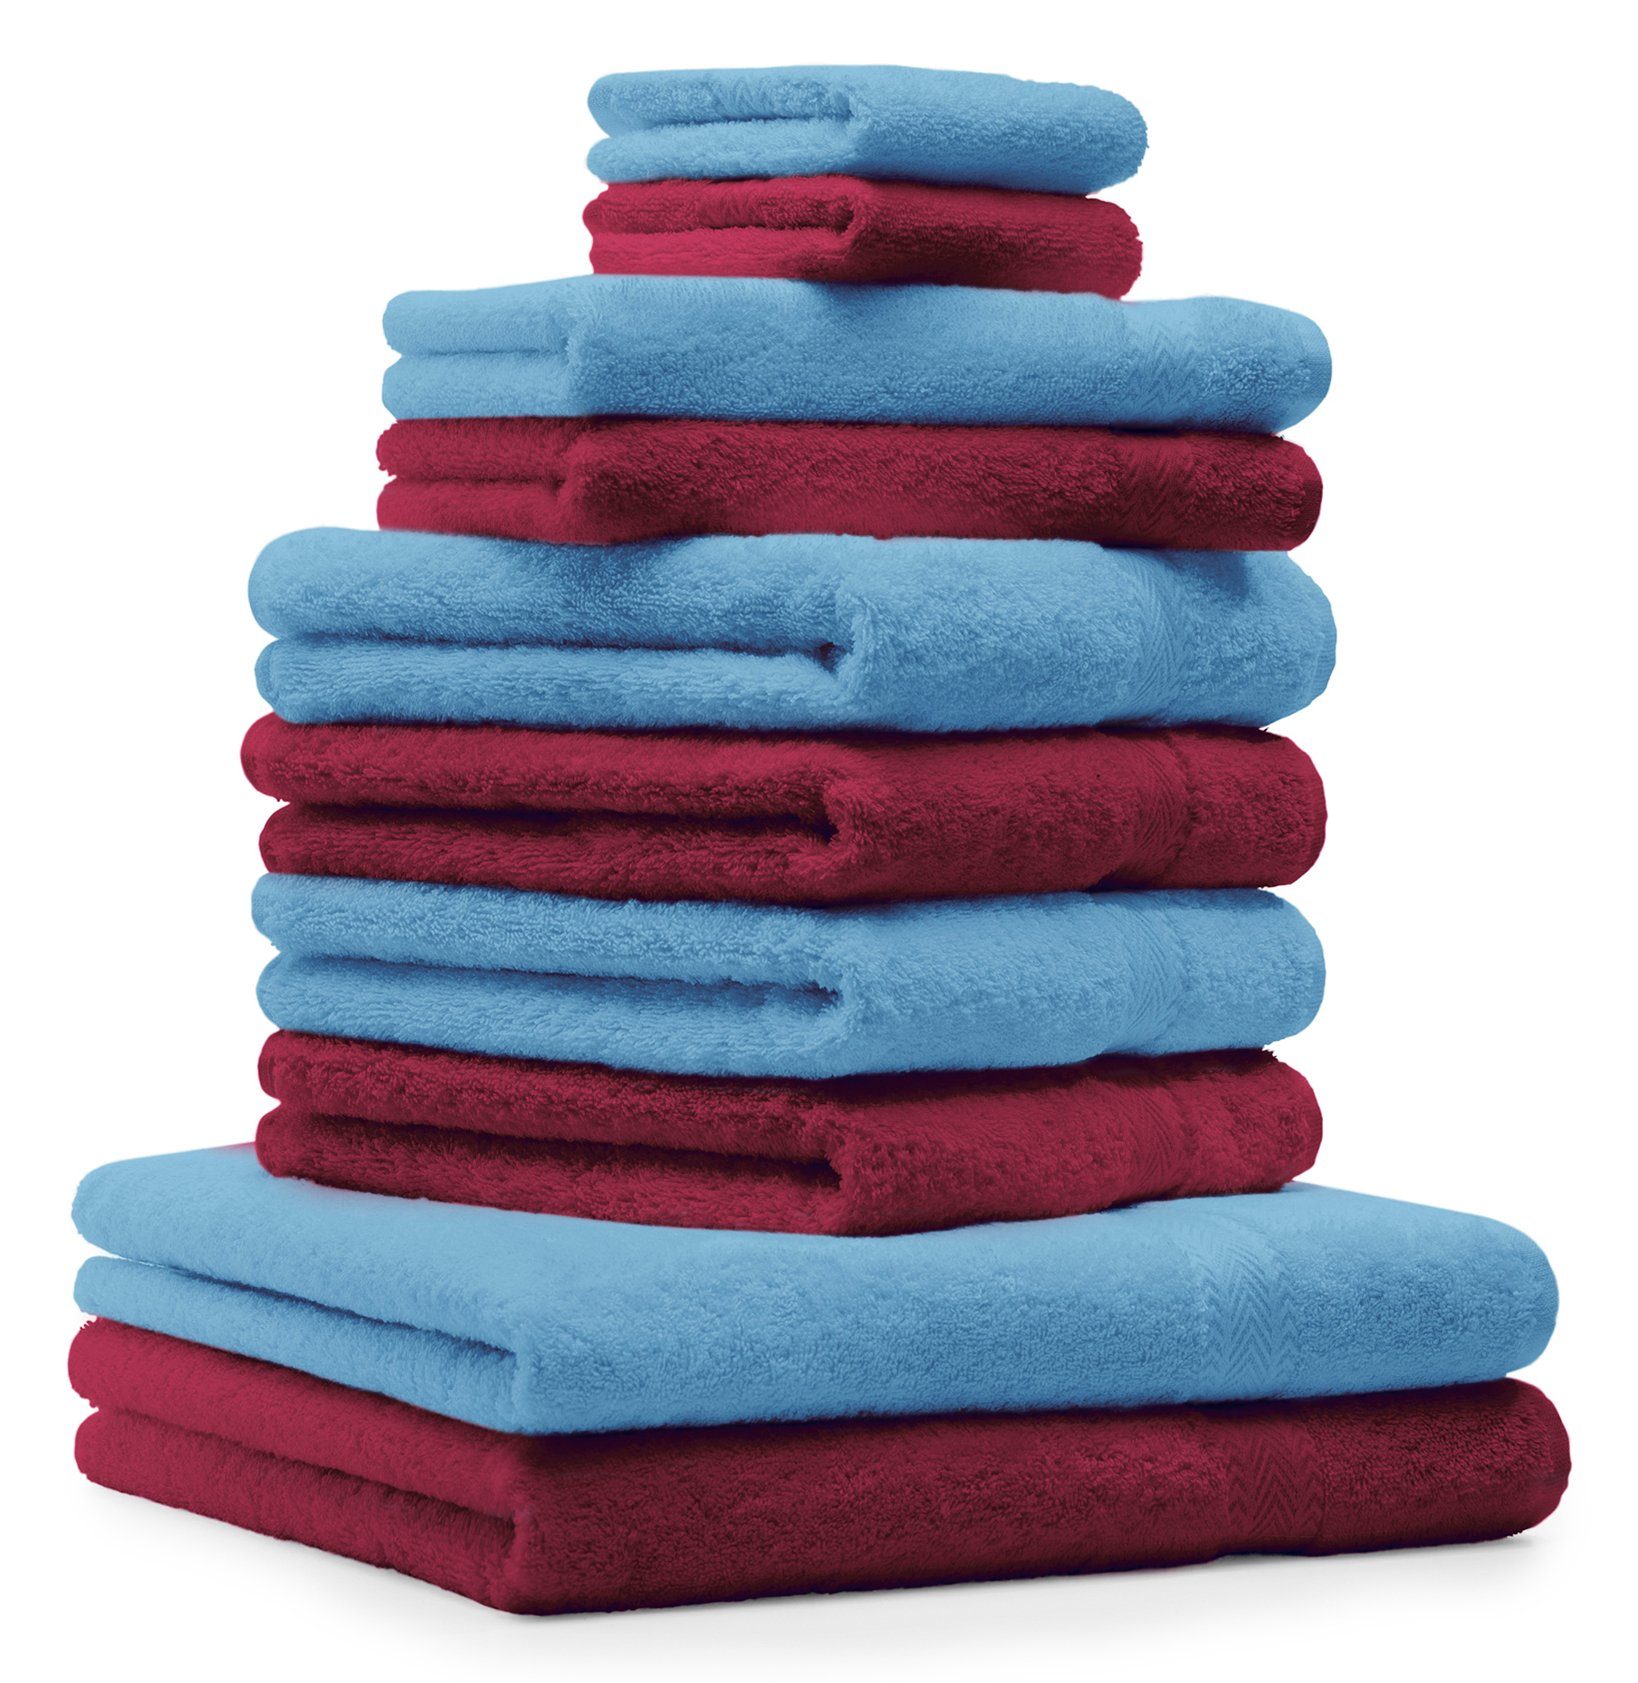 Betz Handtuch Set 10-TLG. Handtuch-Set Classic 100% Baumwolle dunkelrot und hellblau, 100% Baumwolle